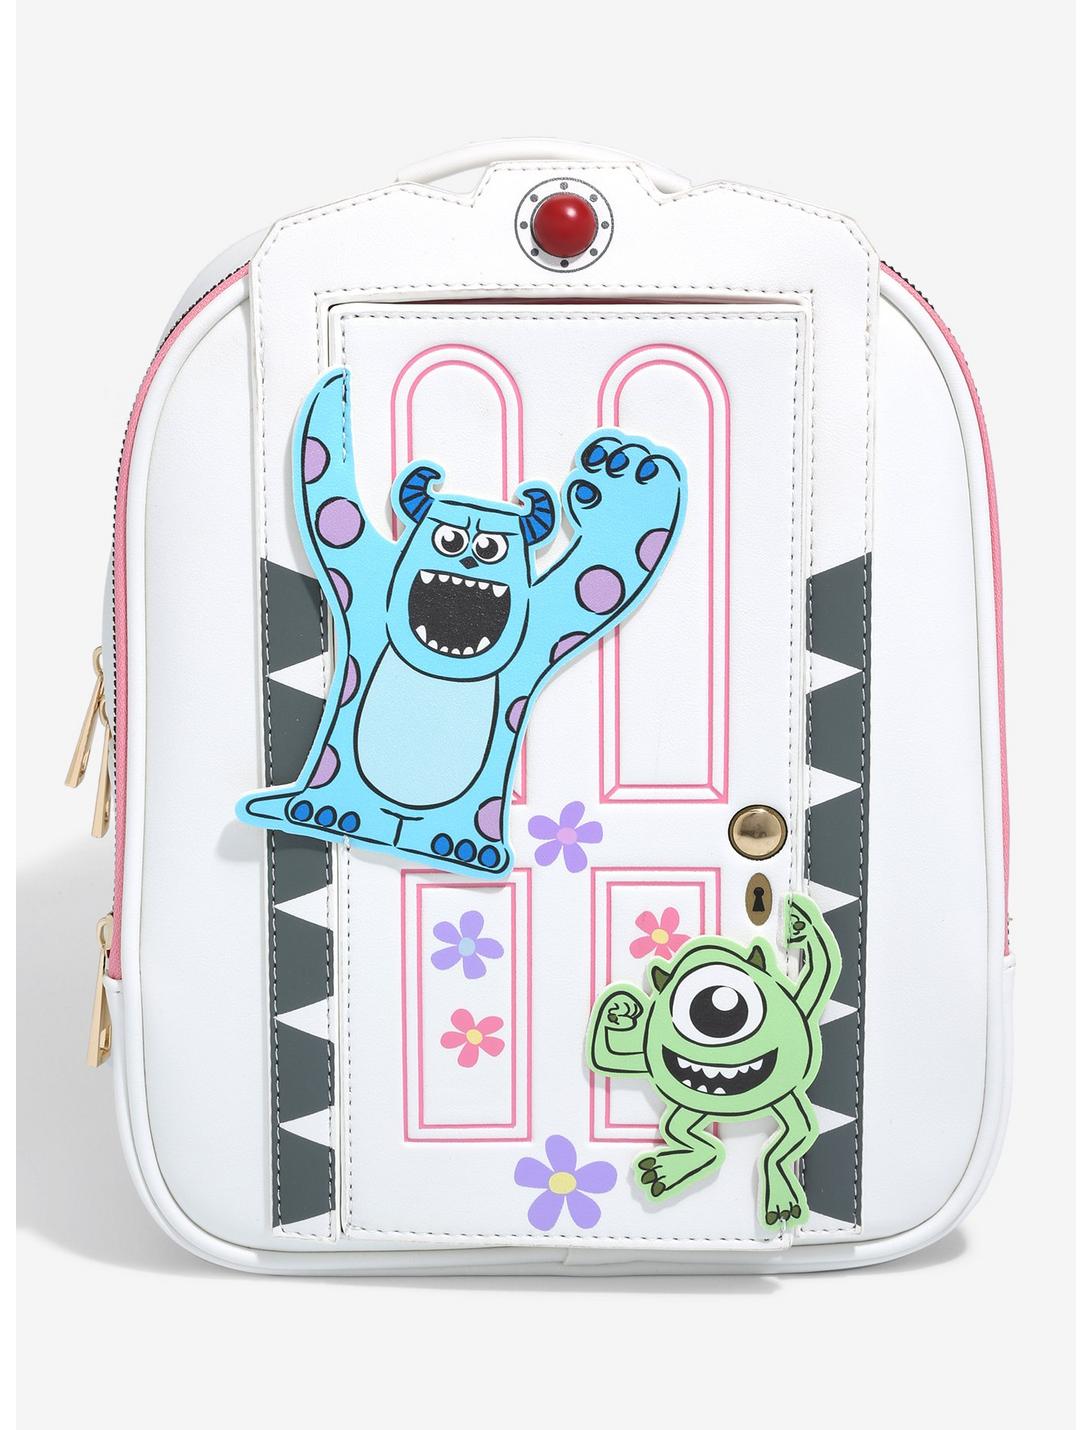 Disney Pixar Monsters, Inc. Boo's Door Pin Collector Backpack - BoxLunch Exclusive, , hi-res